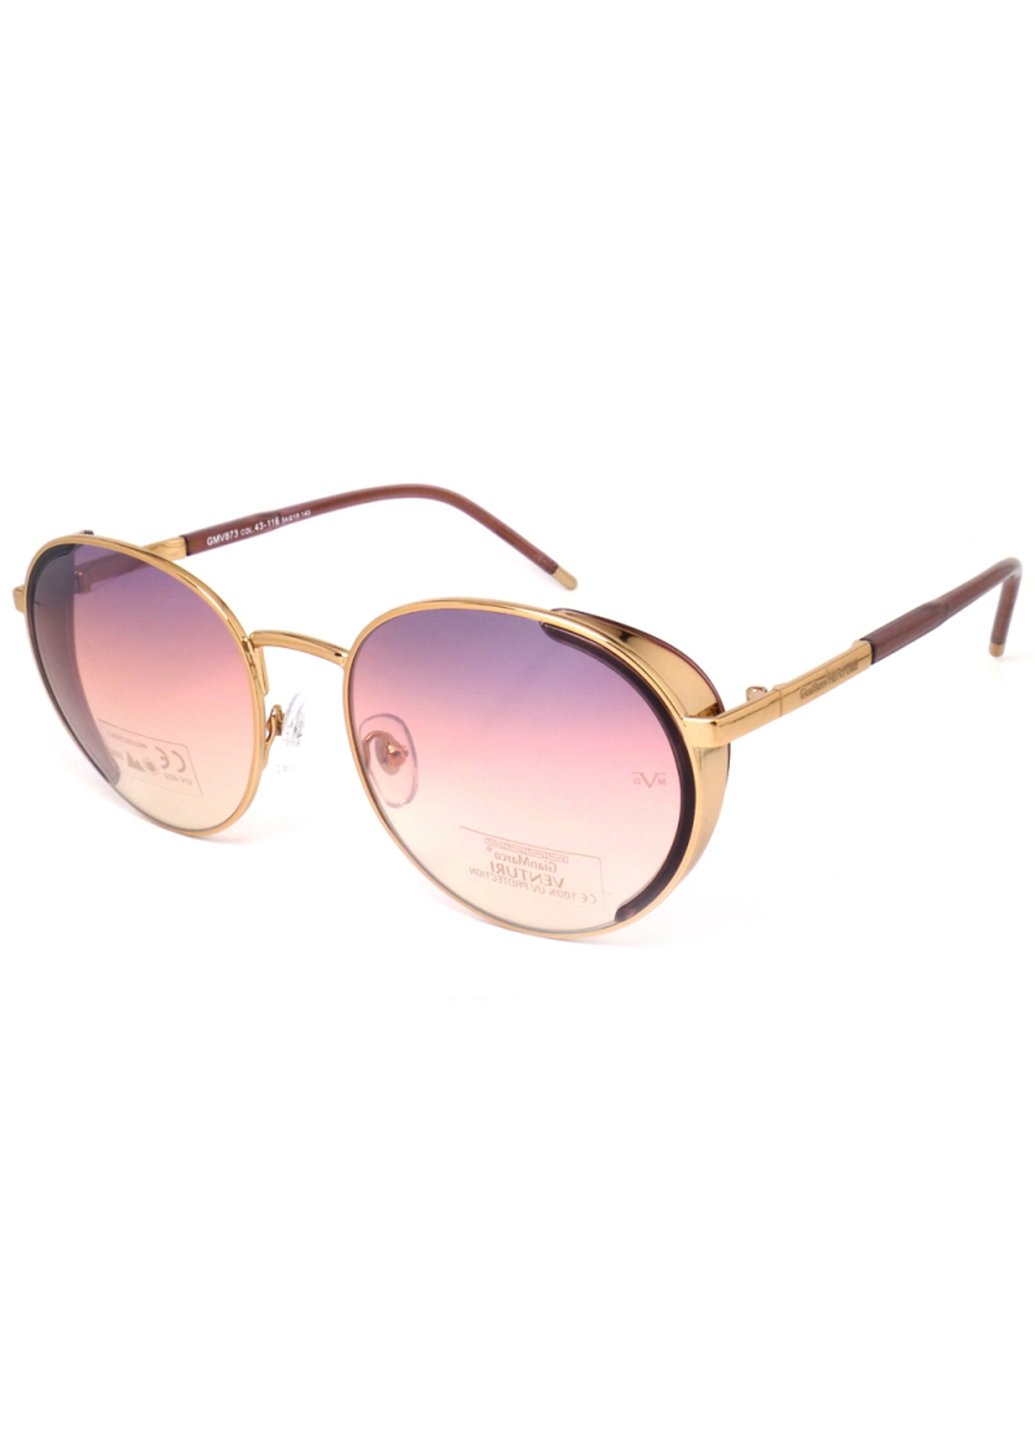 Купить Женские солнцезащитные очки Gian Marco VENTURI GMV873 130017 - Розовый в интернет-магазине